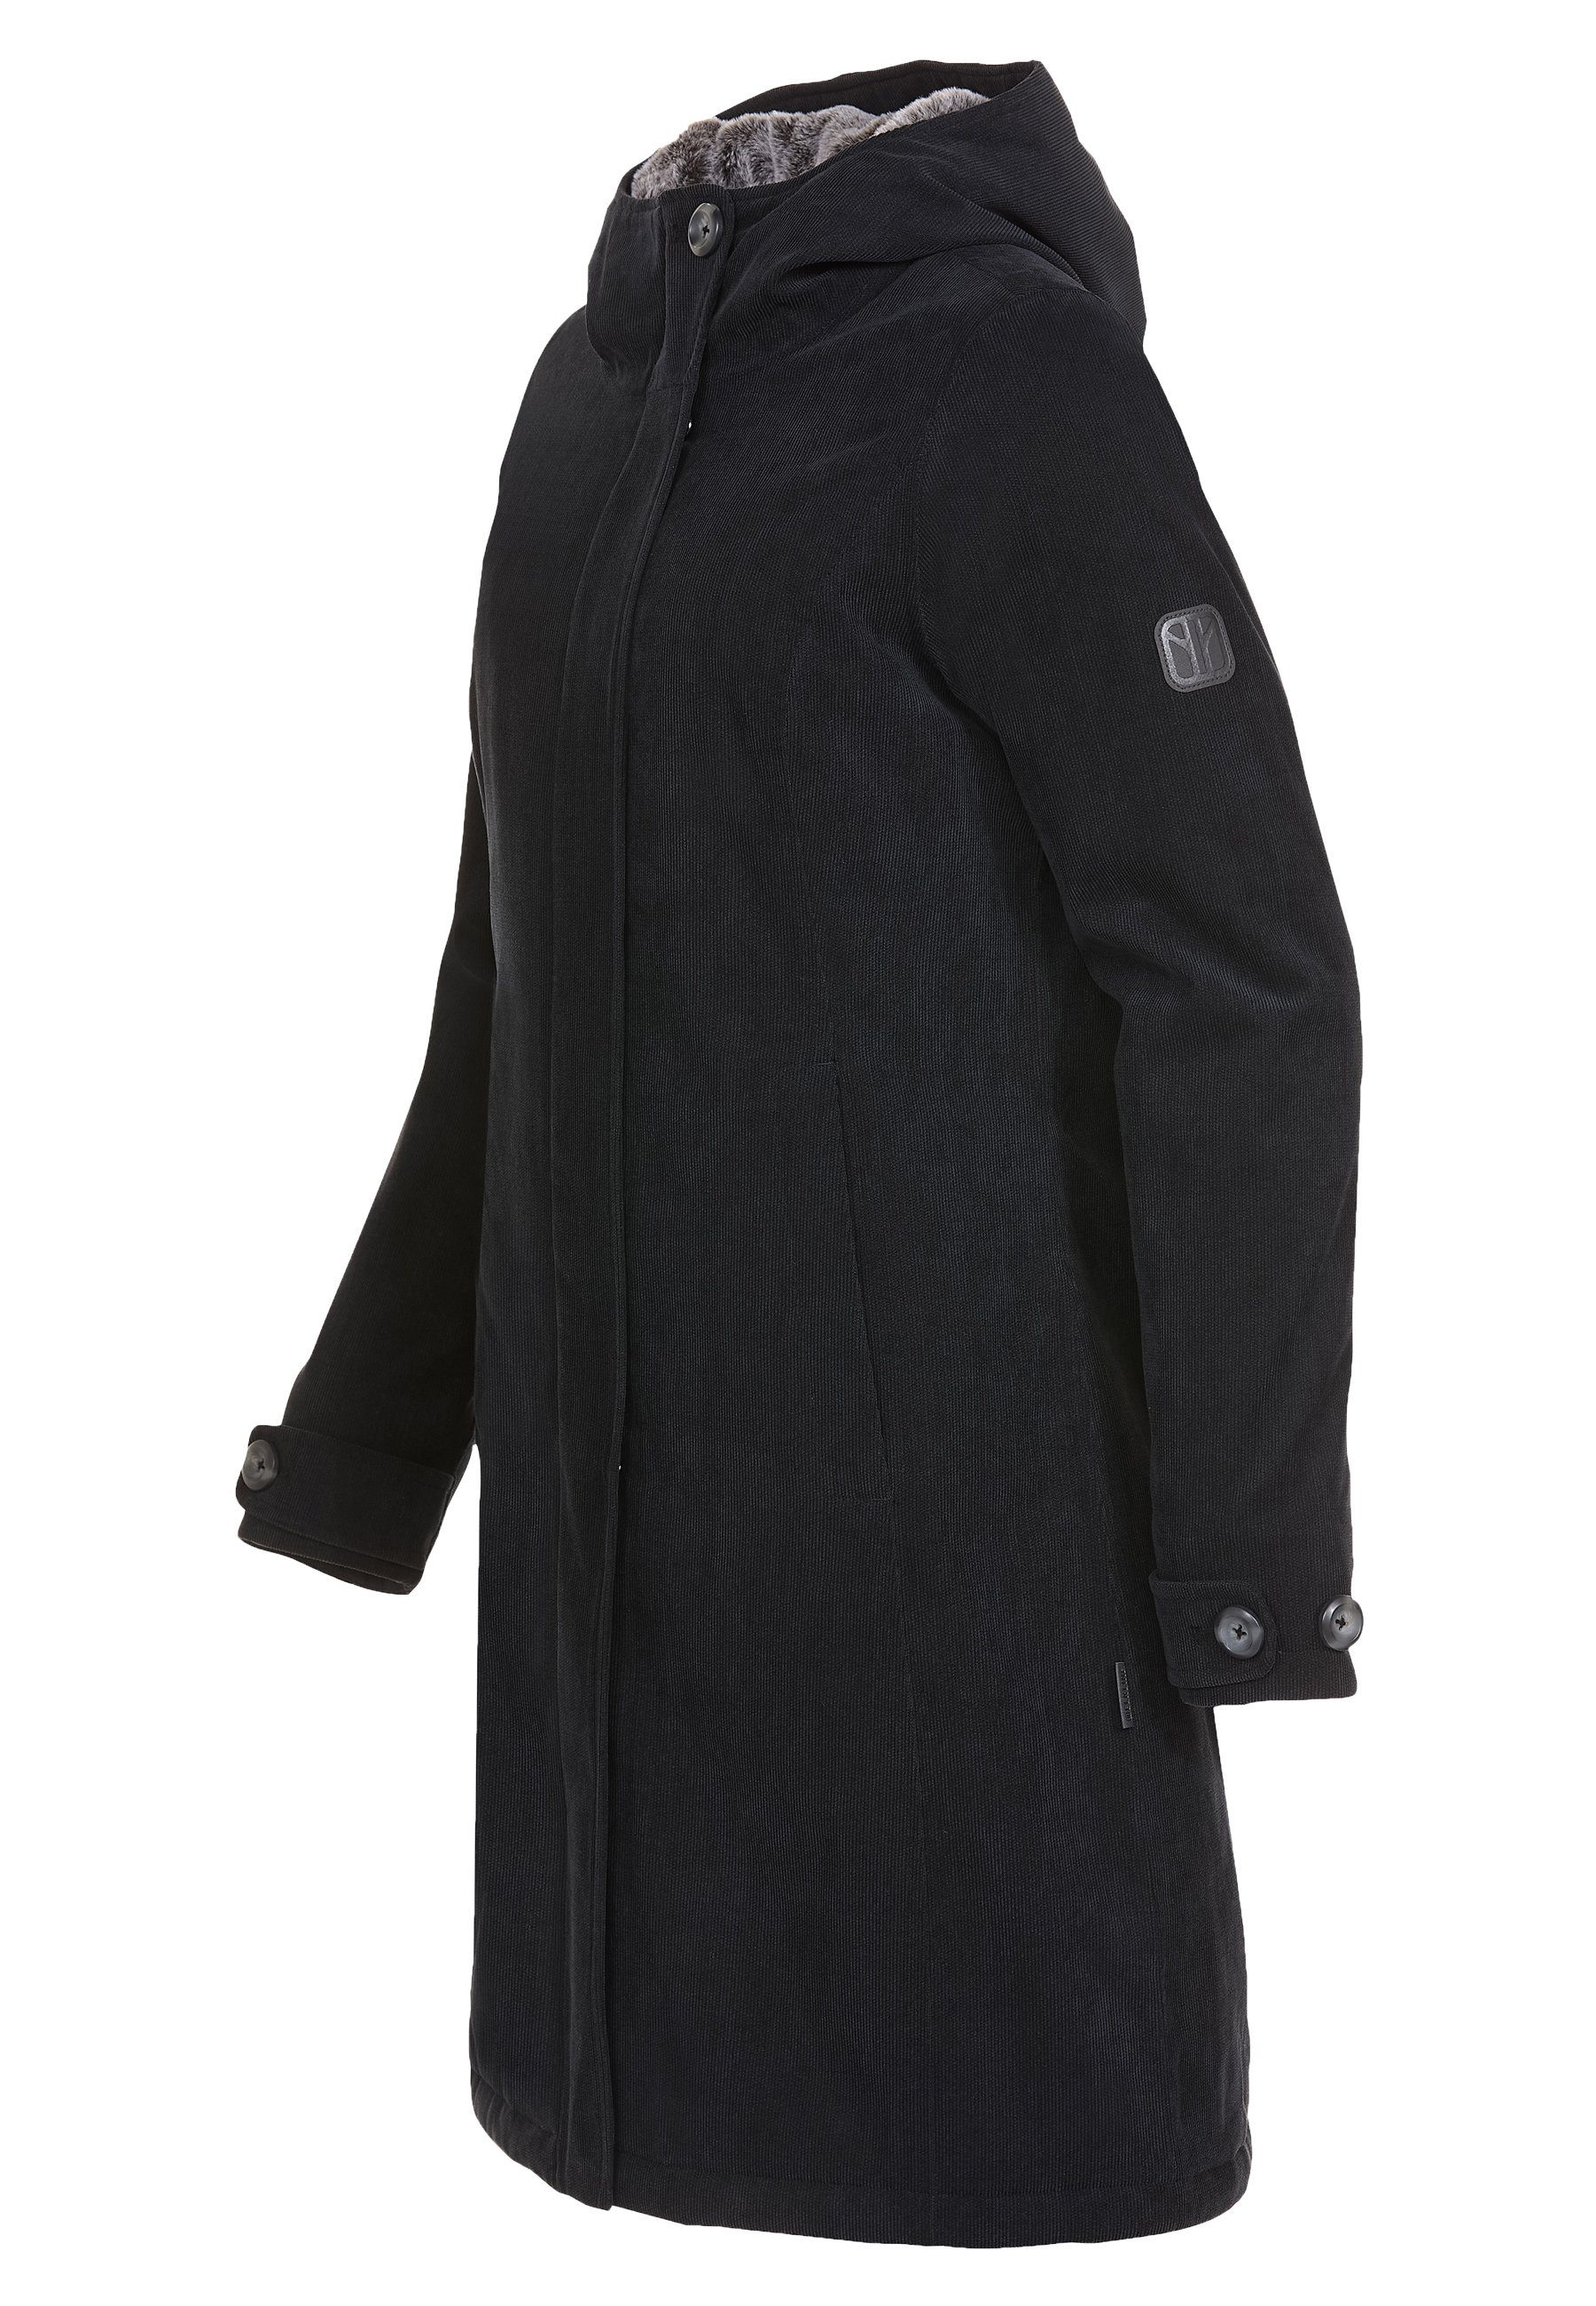 Elkline Winterjacke Glasgow Cord taillierte black warm wasserdicht - Passform anthra